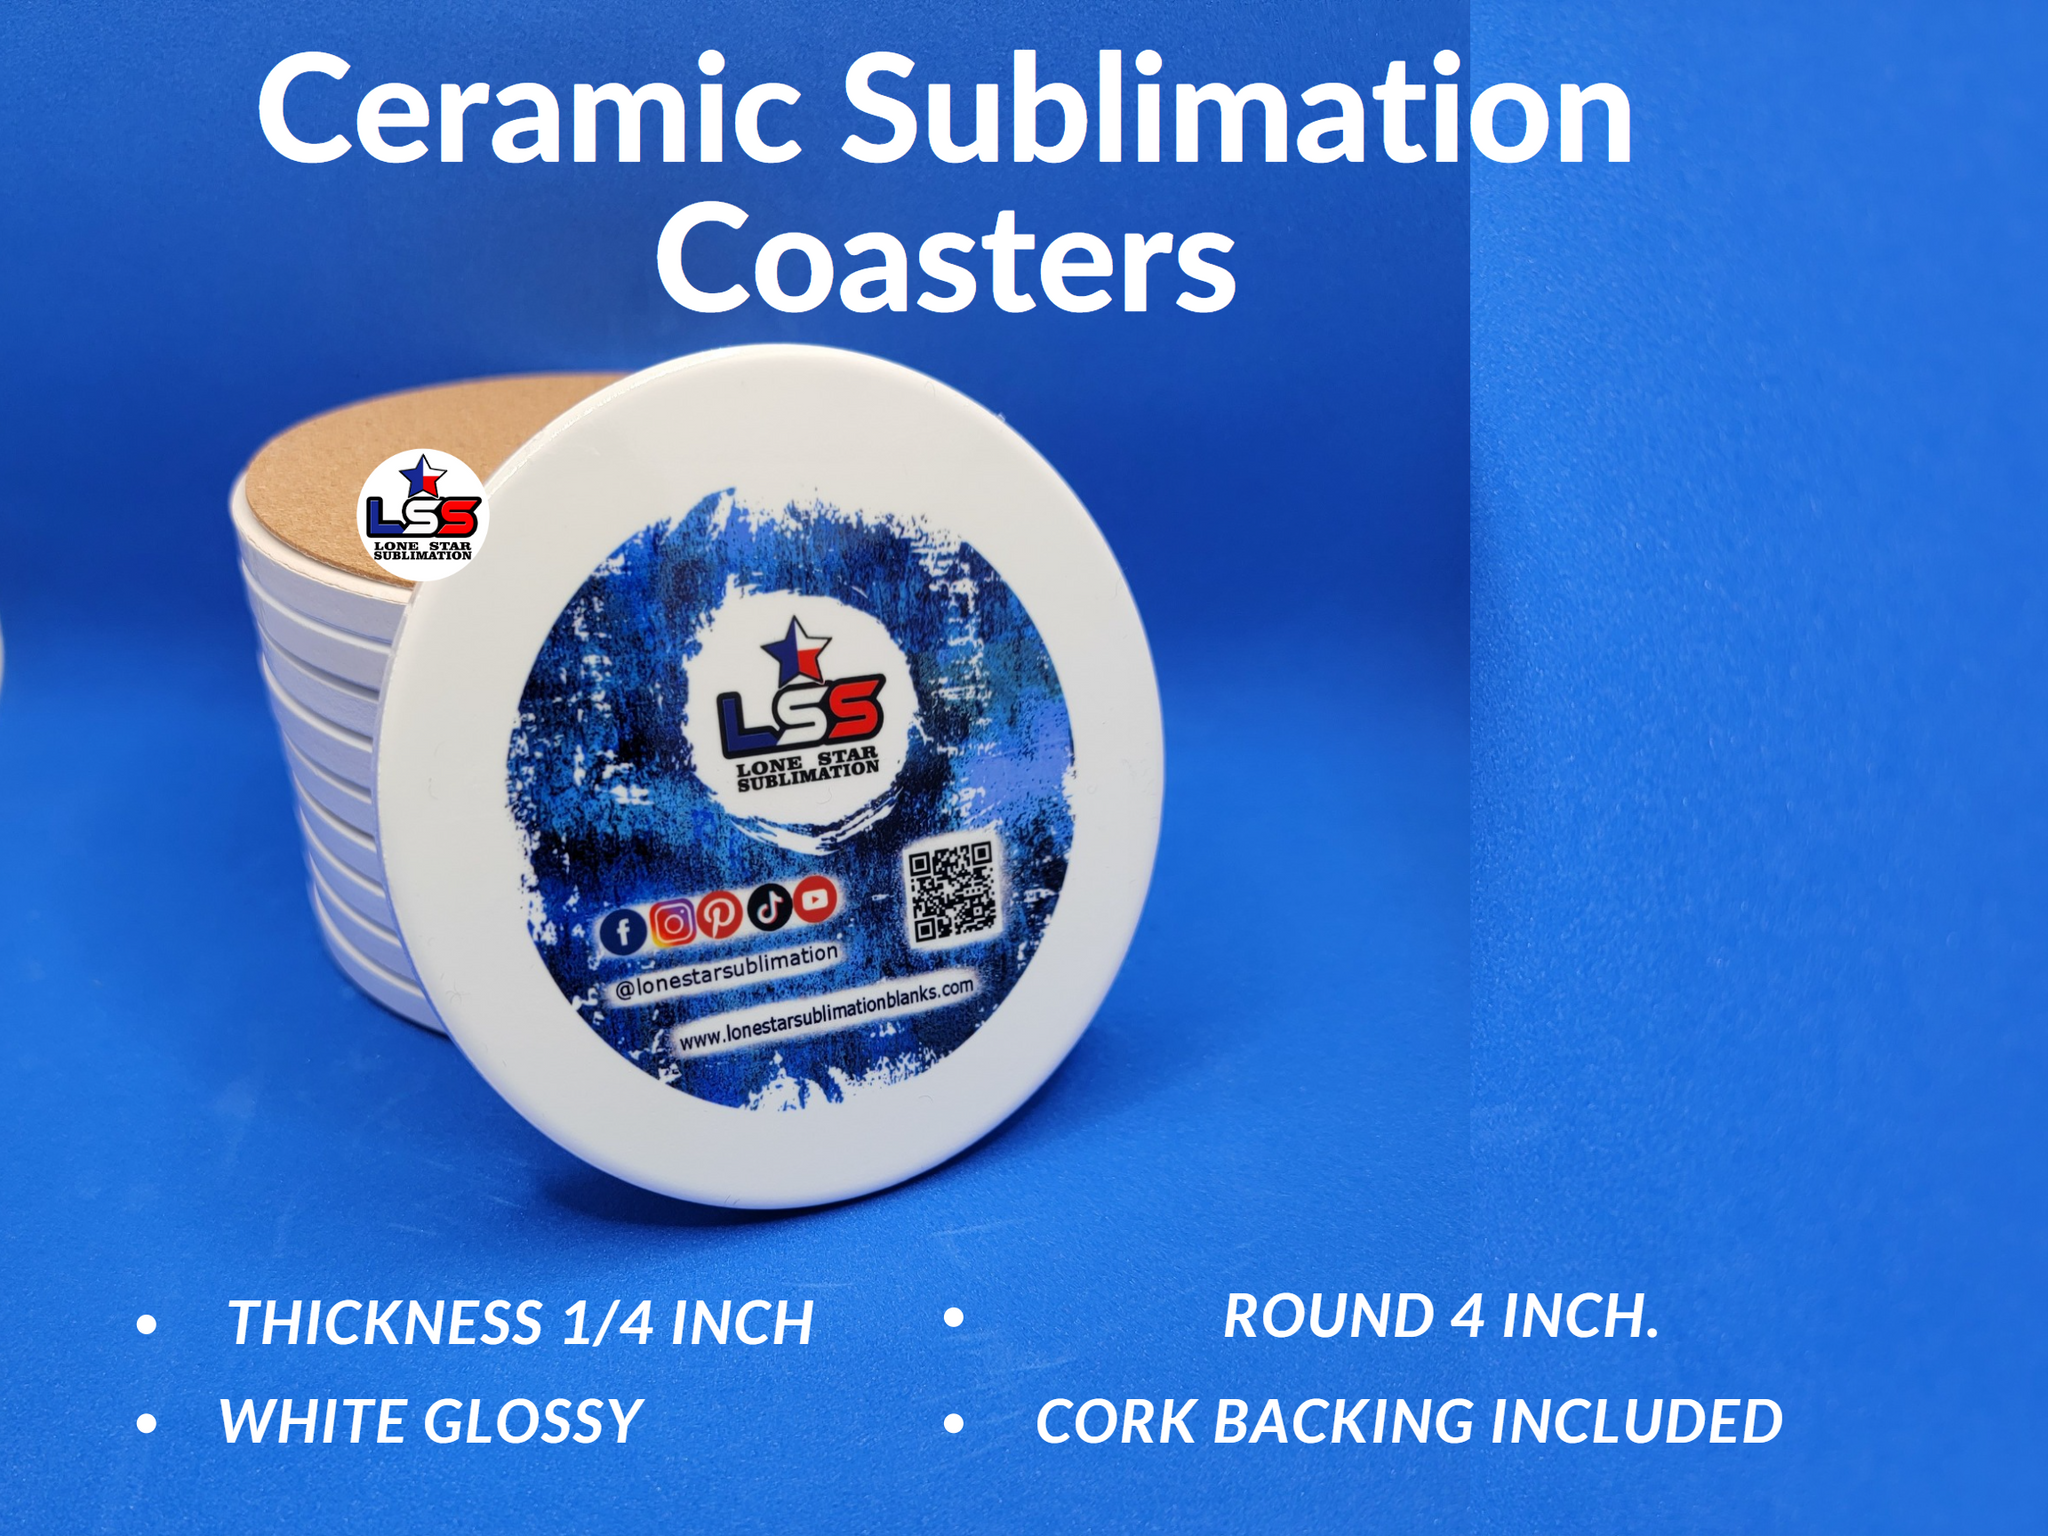 Sublimation Ceramic Coaster Blanks, Blank Sublimation Mdf Coaster